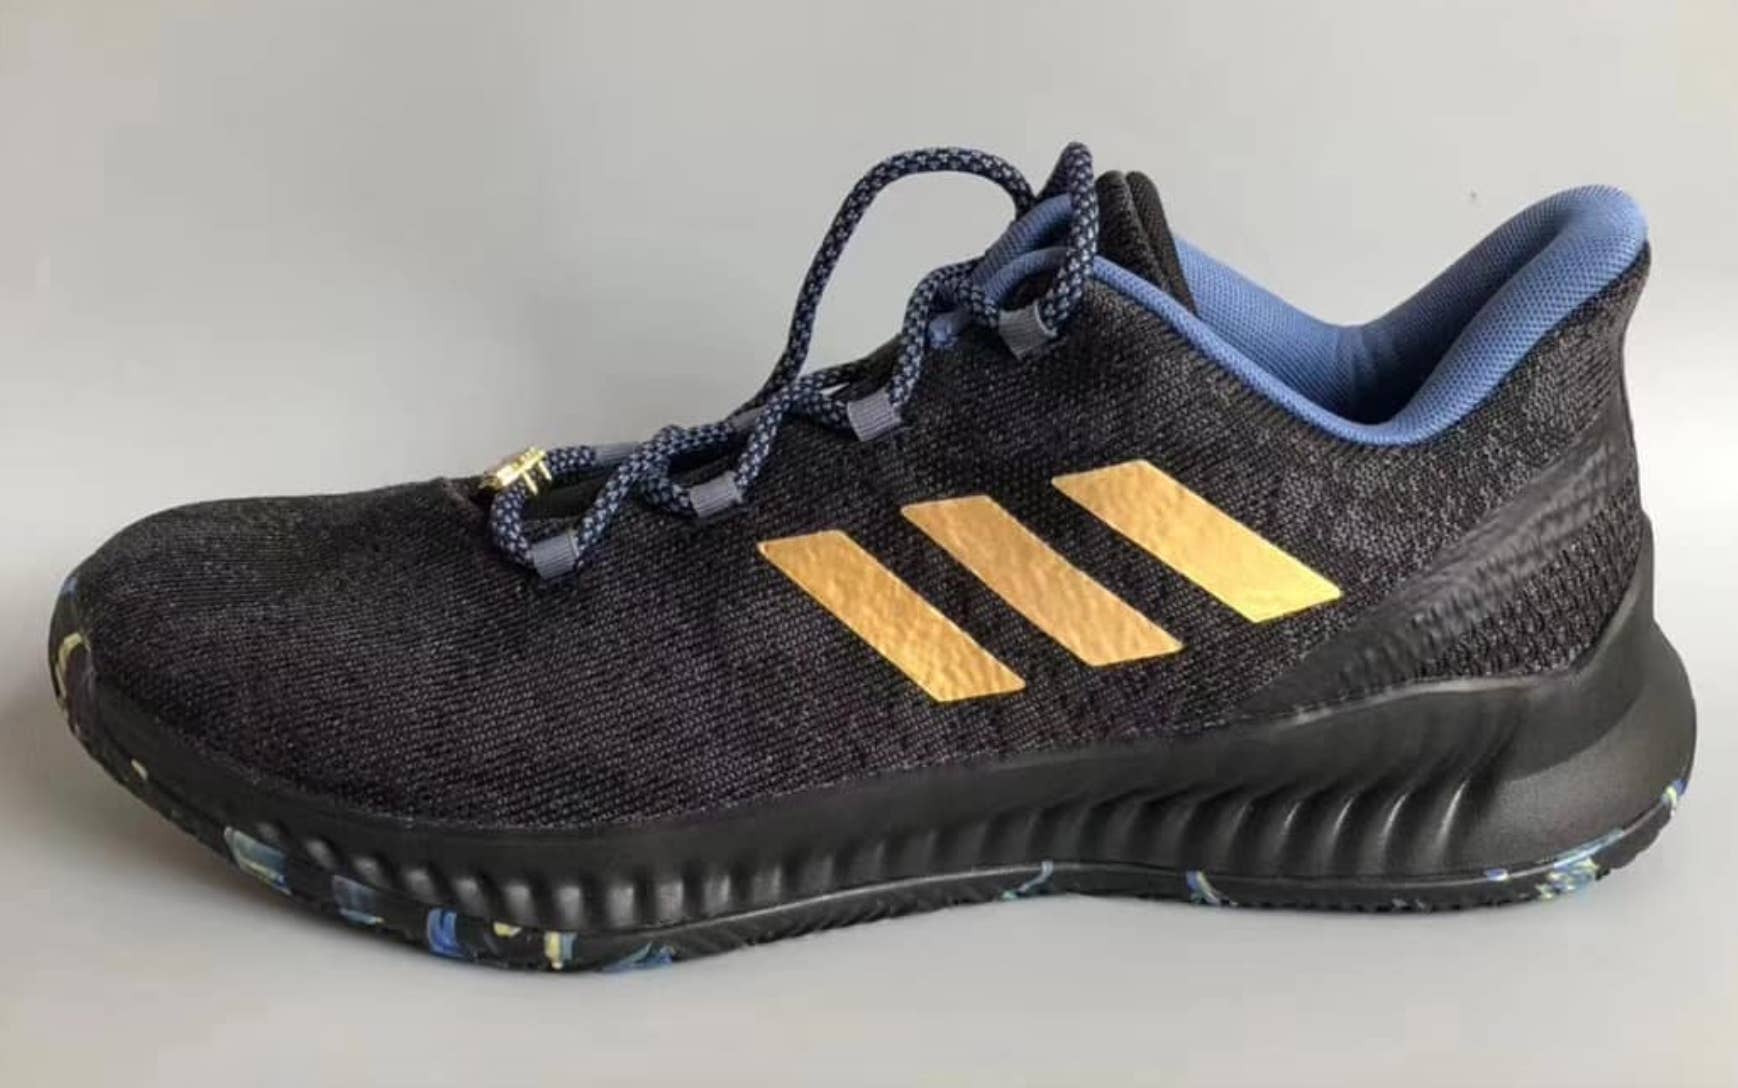 lana Concurso Apropiado Adidas Made MVP Shoes for James Harden Already | Complex